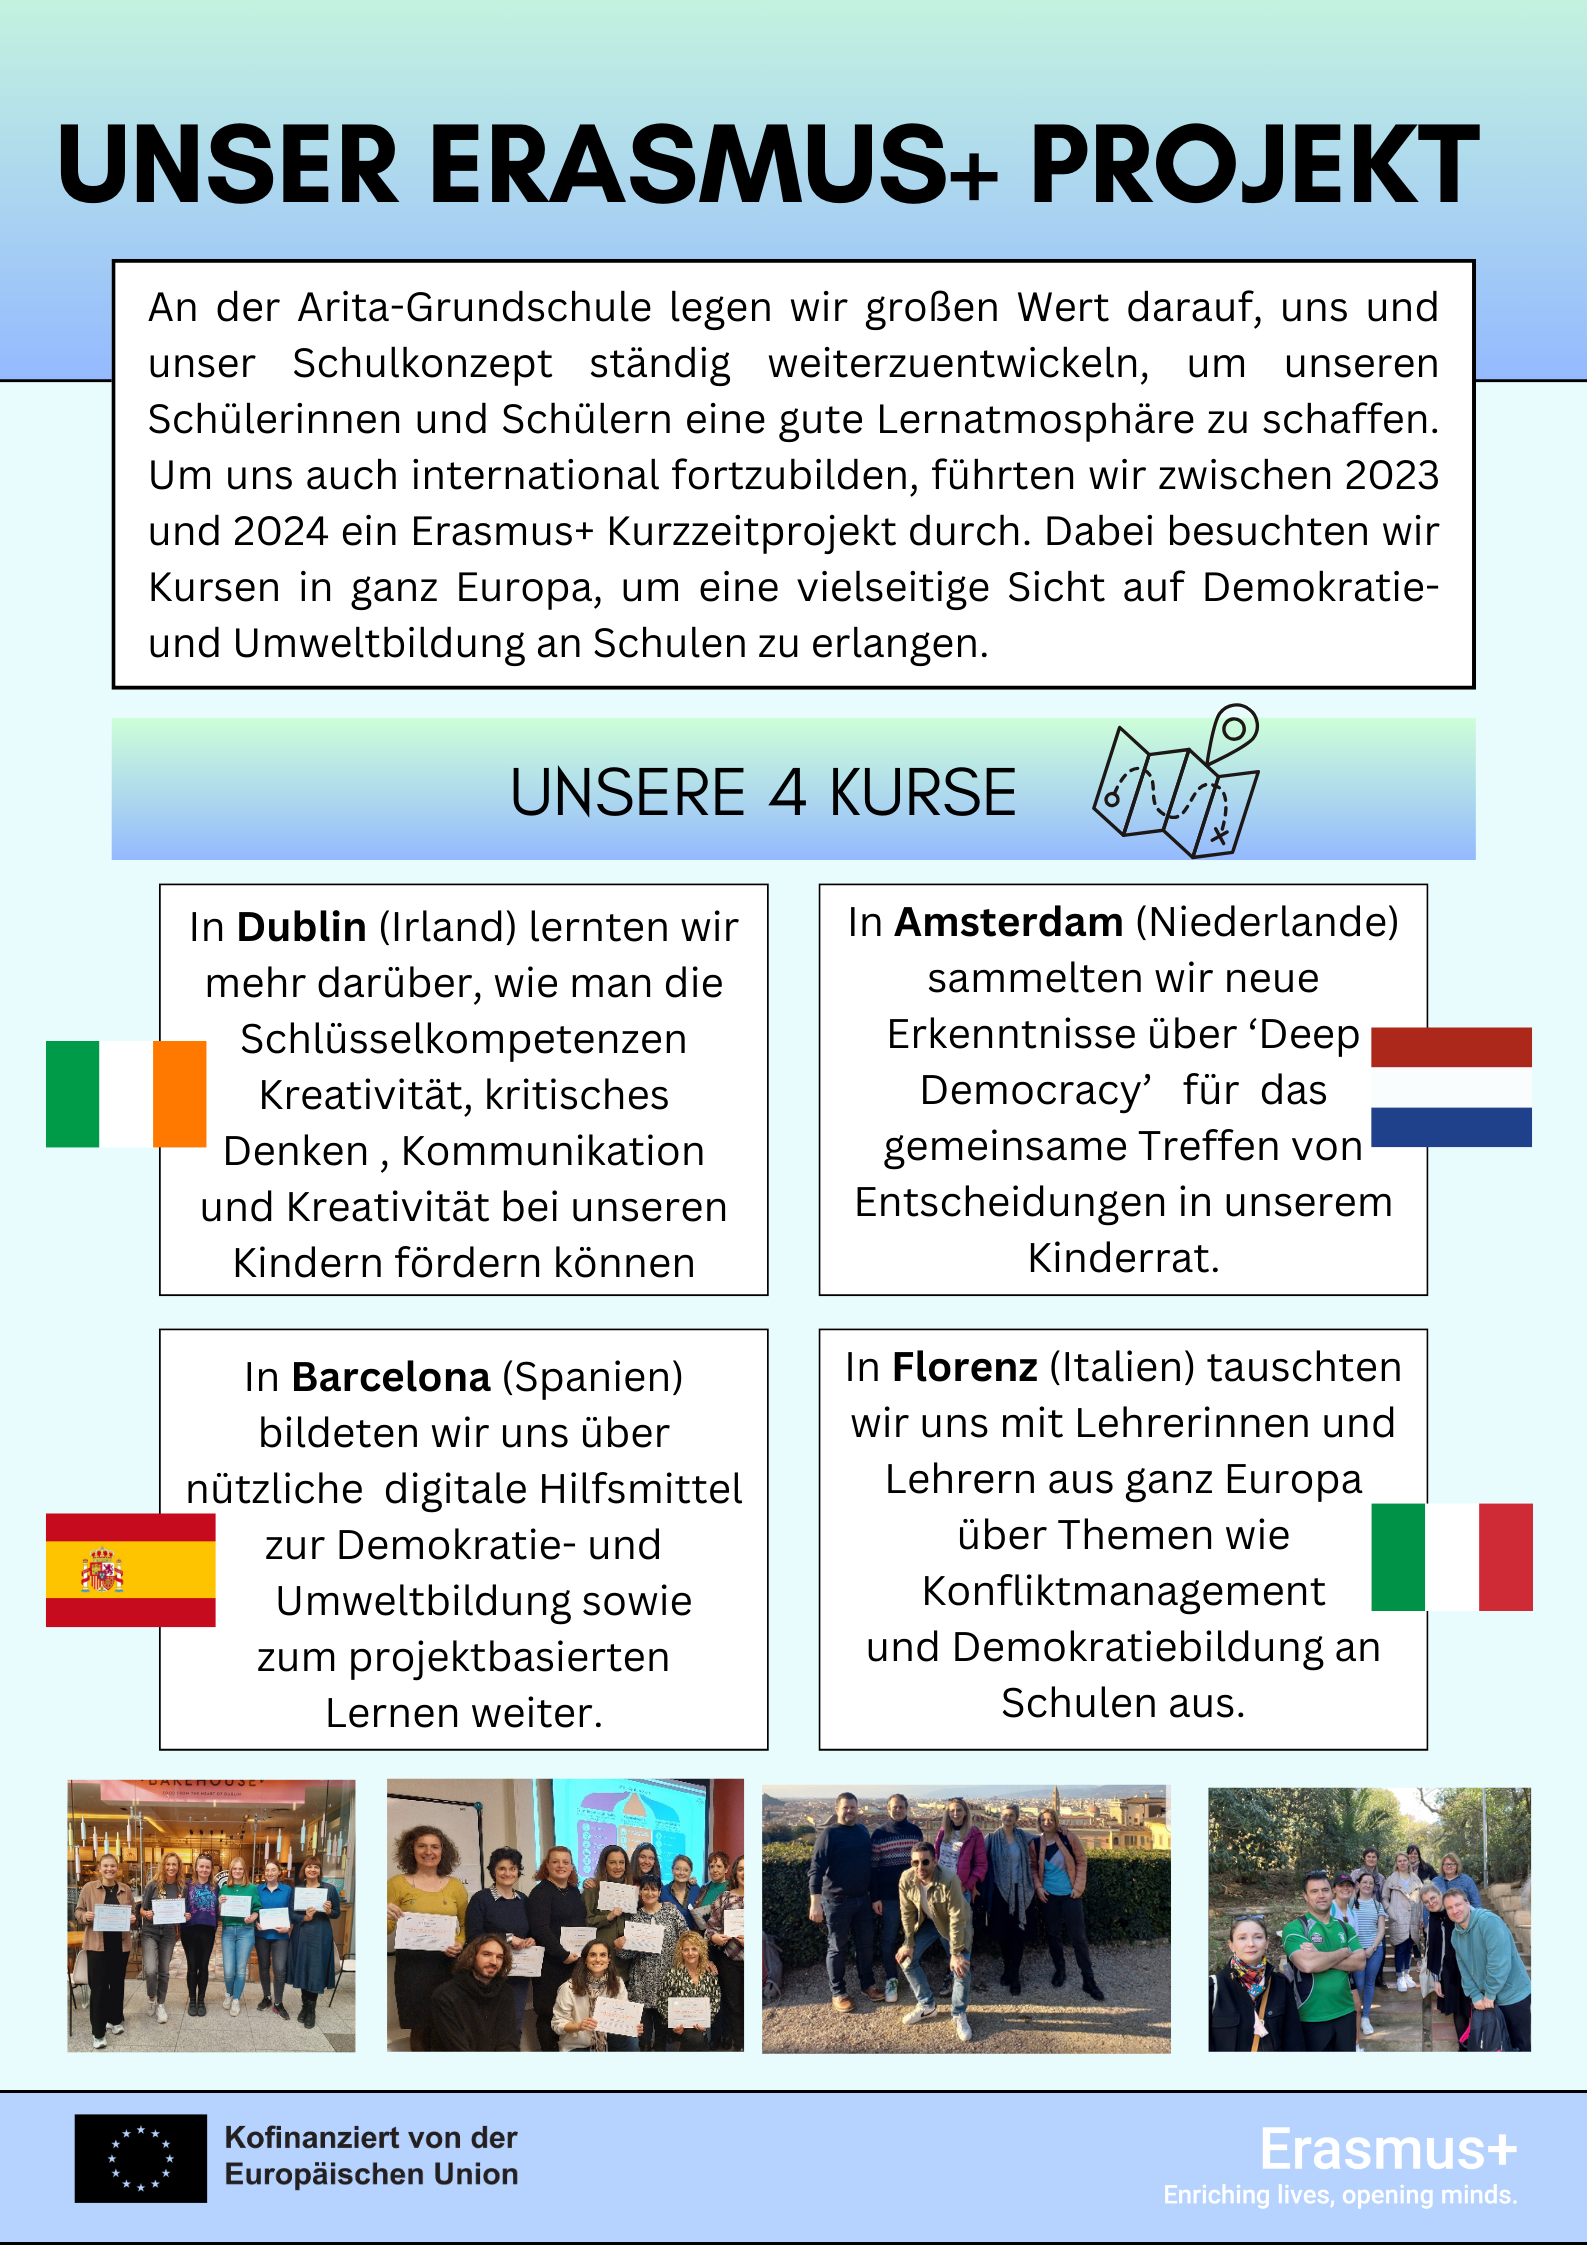 Plakat zum Erasmus+Projekt, an dem die Arite-Grundschule teilnimmt